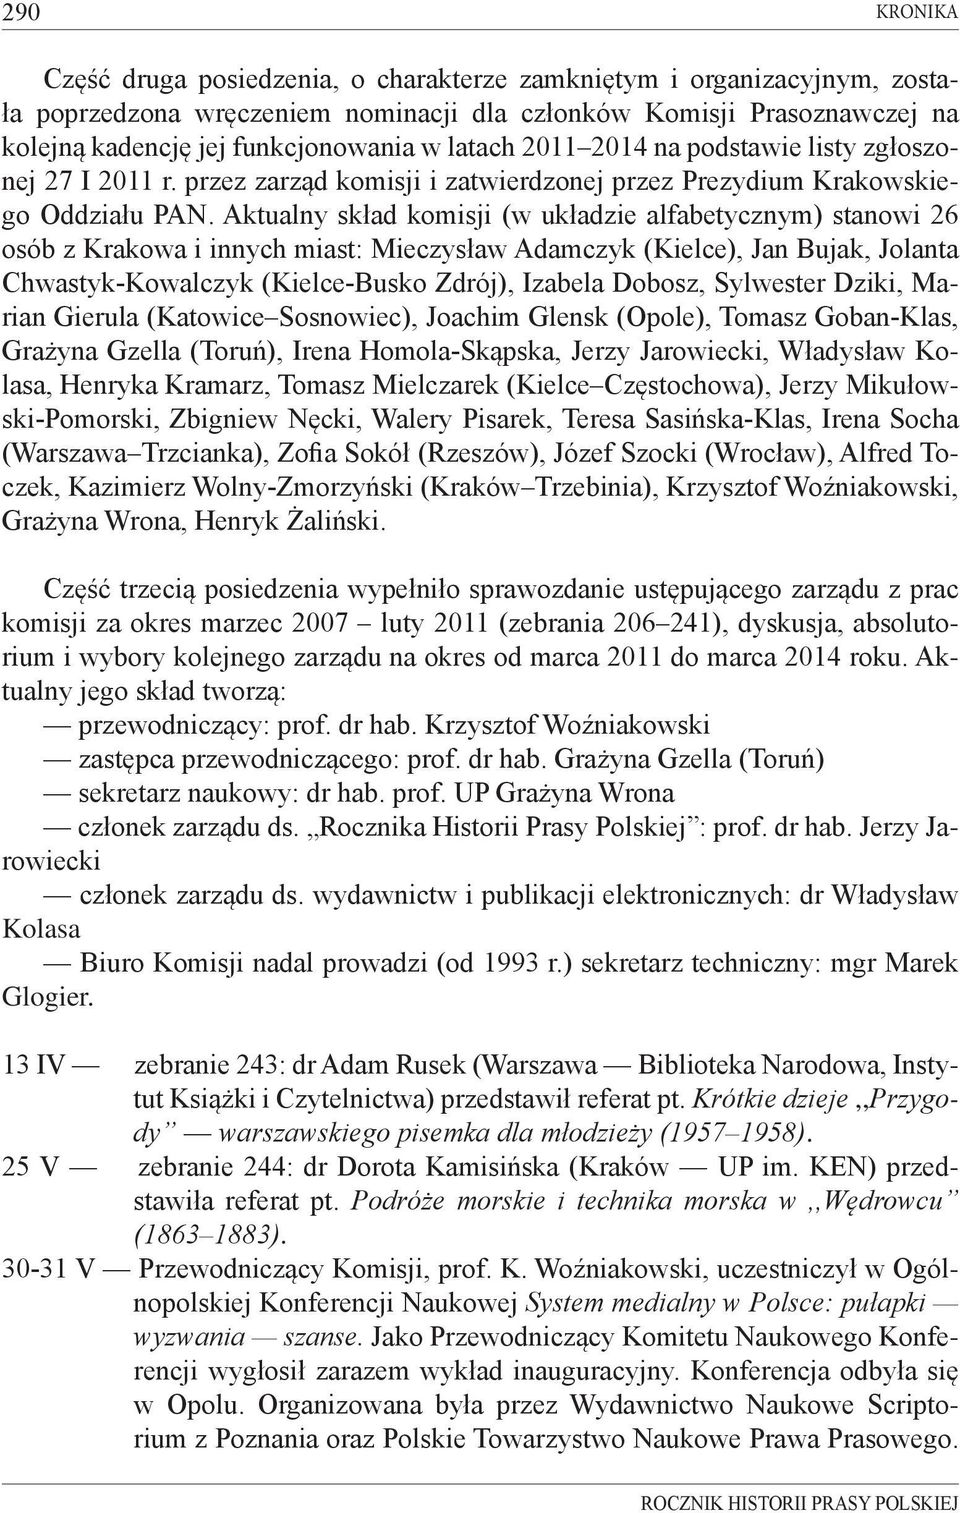 Aktualny skład komisji (w układzie alfabetycznym) stanowi 26 osób z Krakowa i innych miast: Mieczysław Adamczyk (Kielce), Jan Bujak, Jolanta Chwastyk-Kowalczyk (Kielce-Busko Zdrój), Izabela Dobosz,